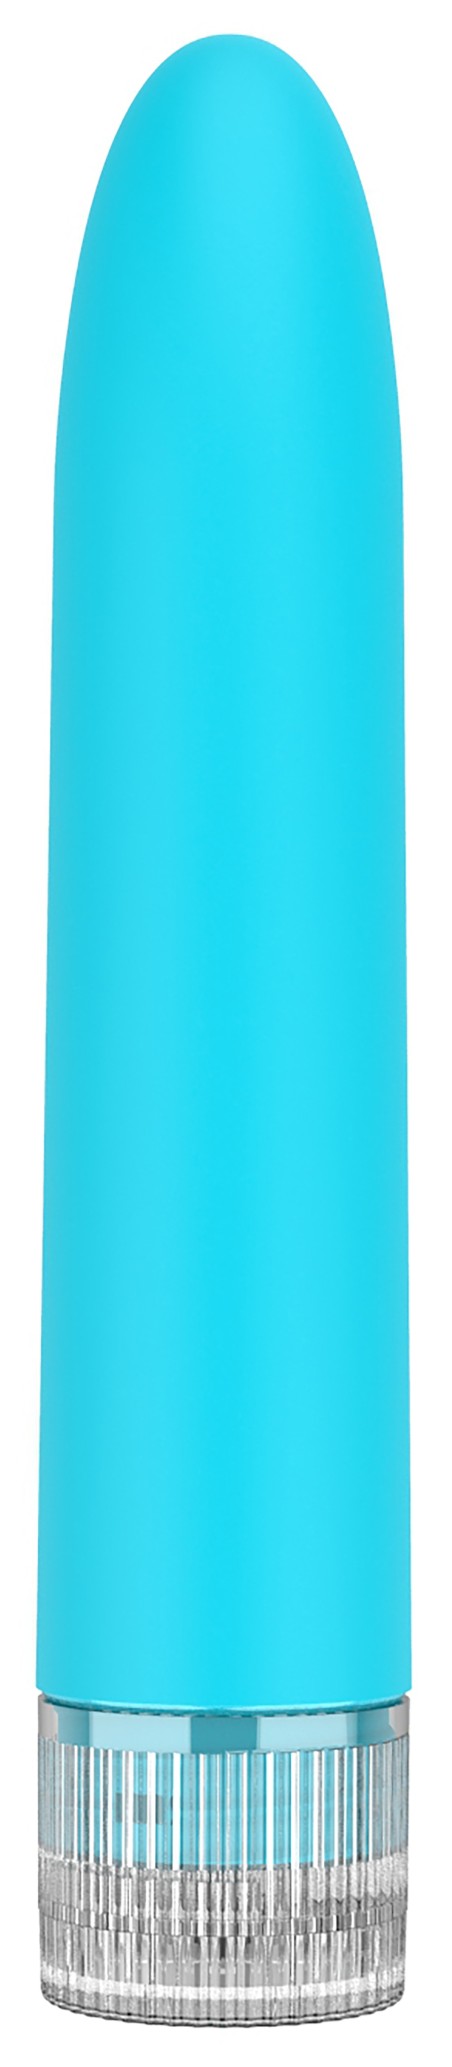 Mini Vibrator Eleni 14cm Turquoise